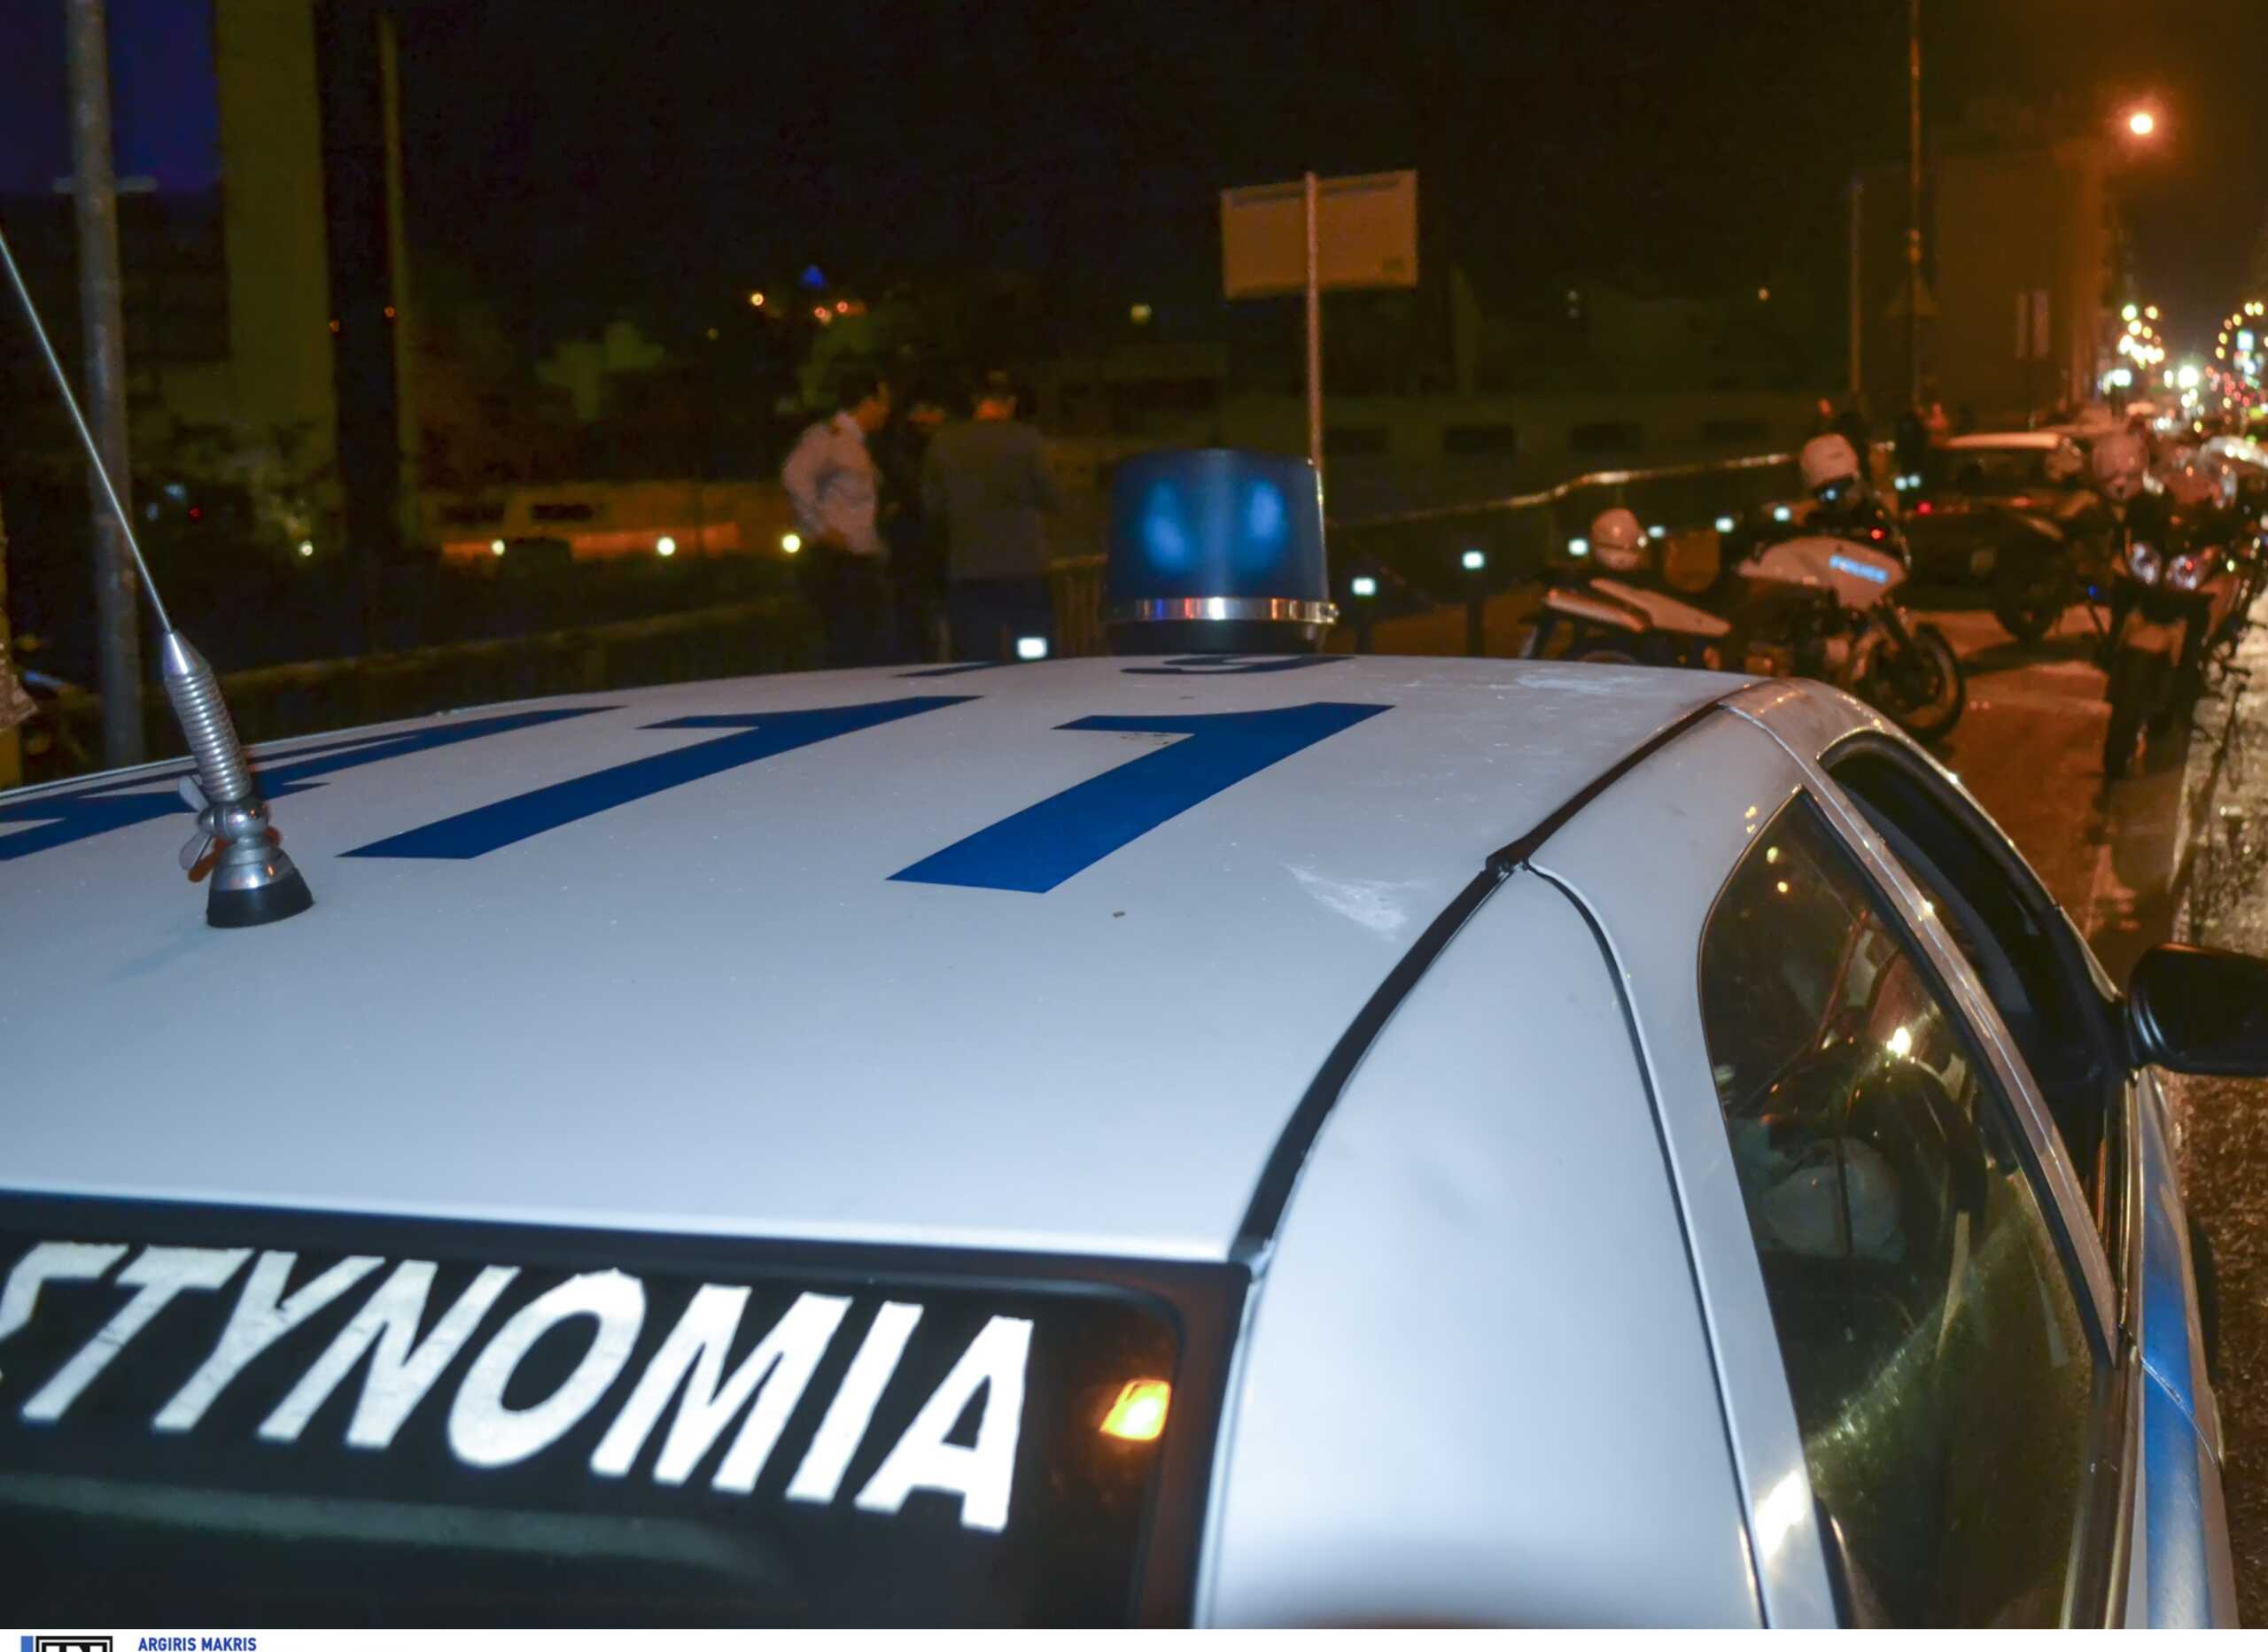 Σοκ στη Θεσσαλονίκη: 52χρονος βρέθηκε νεκρός σε λίμνη αίματος – Έγκλημα ή αυτοκτονία;